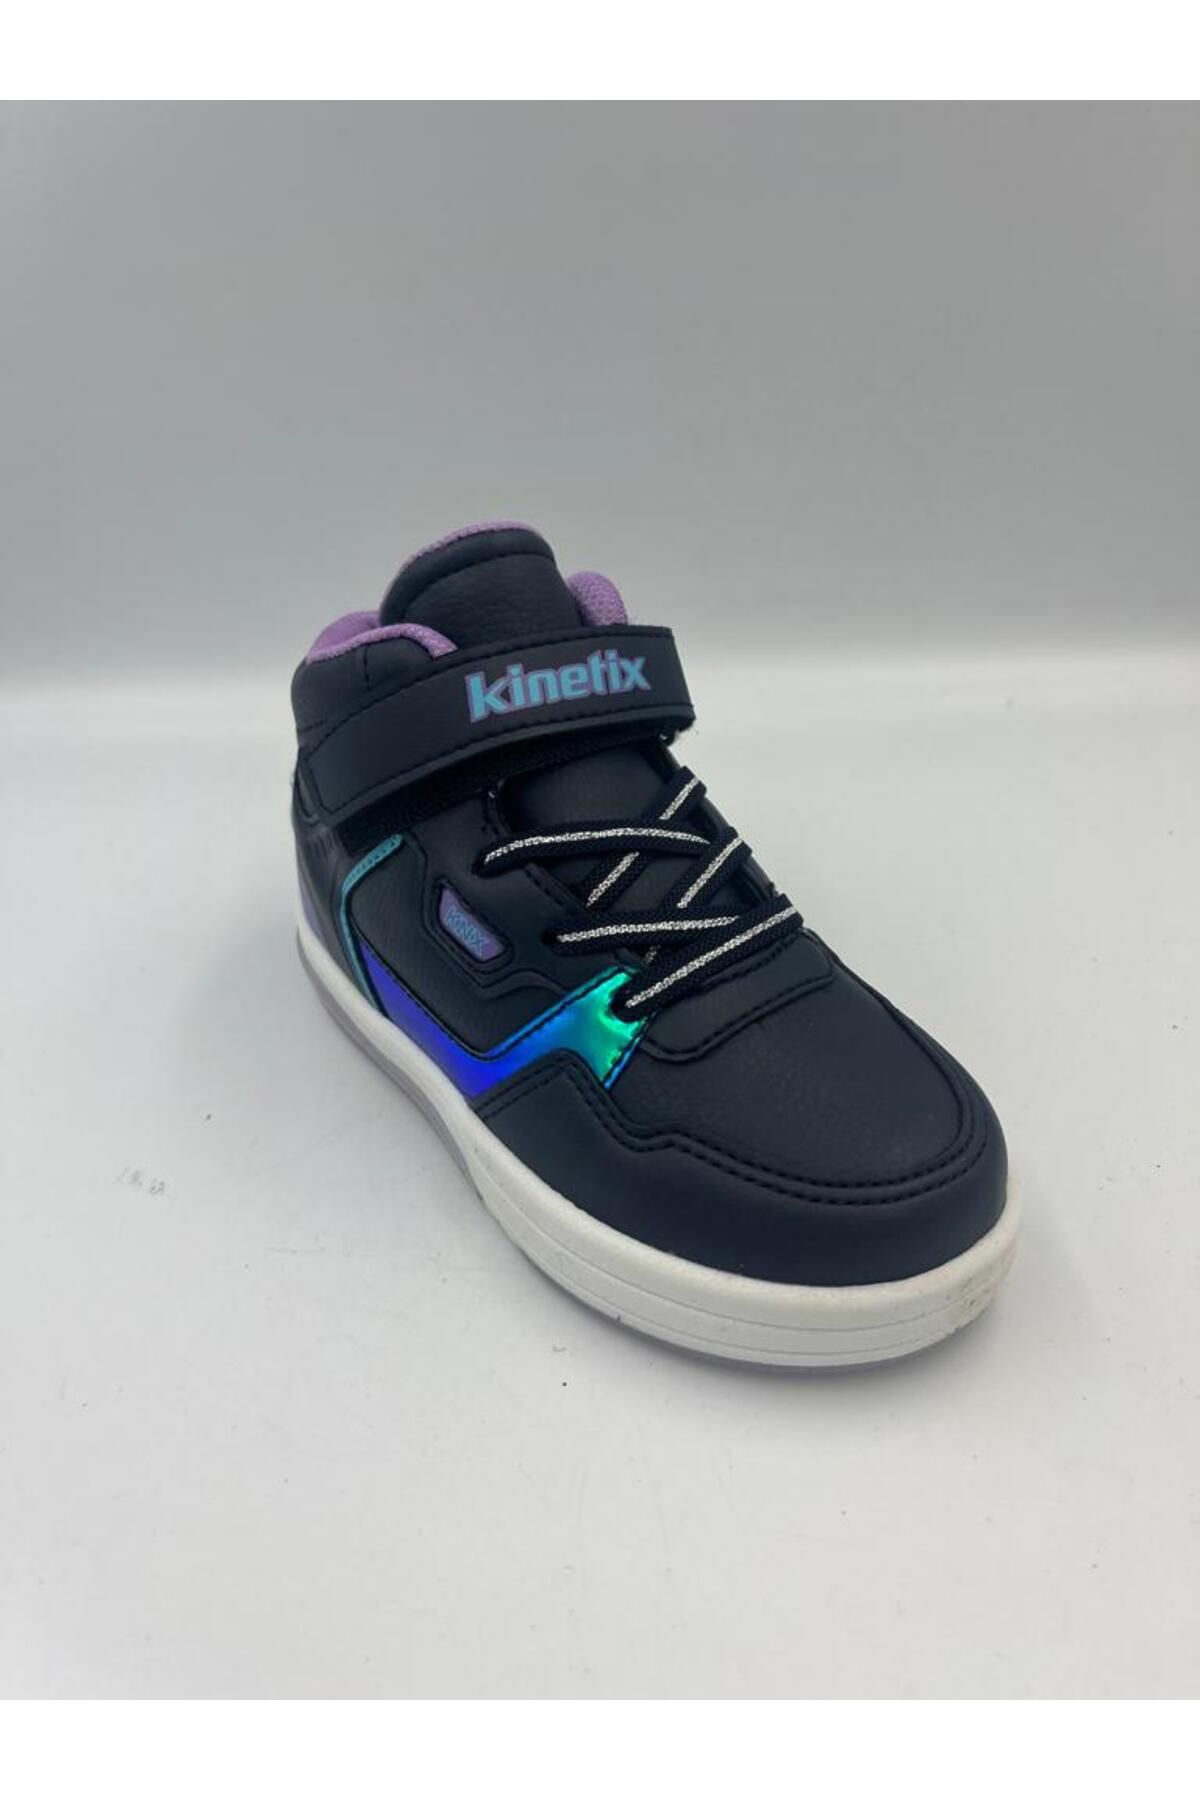 Kinetix kız çocuk sneaker spor ayakkabısı ışıklı